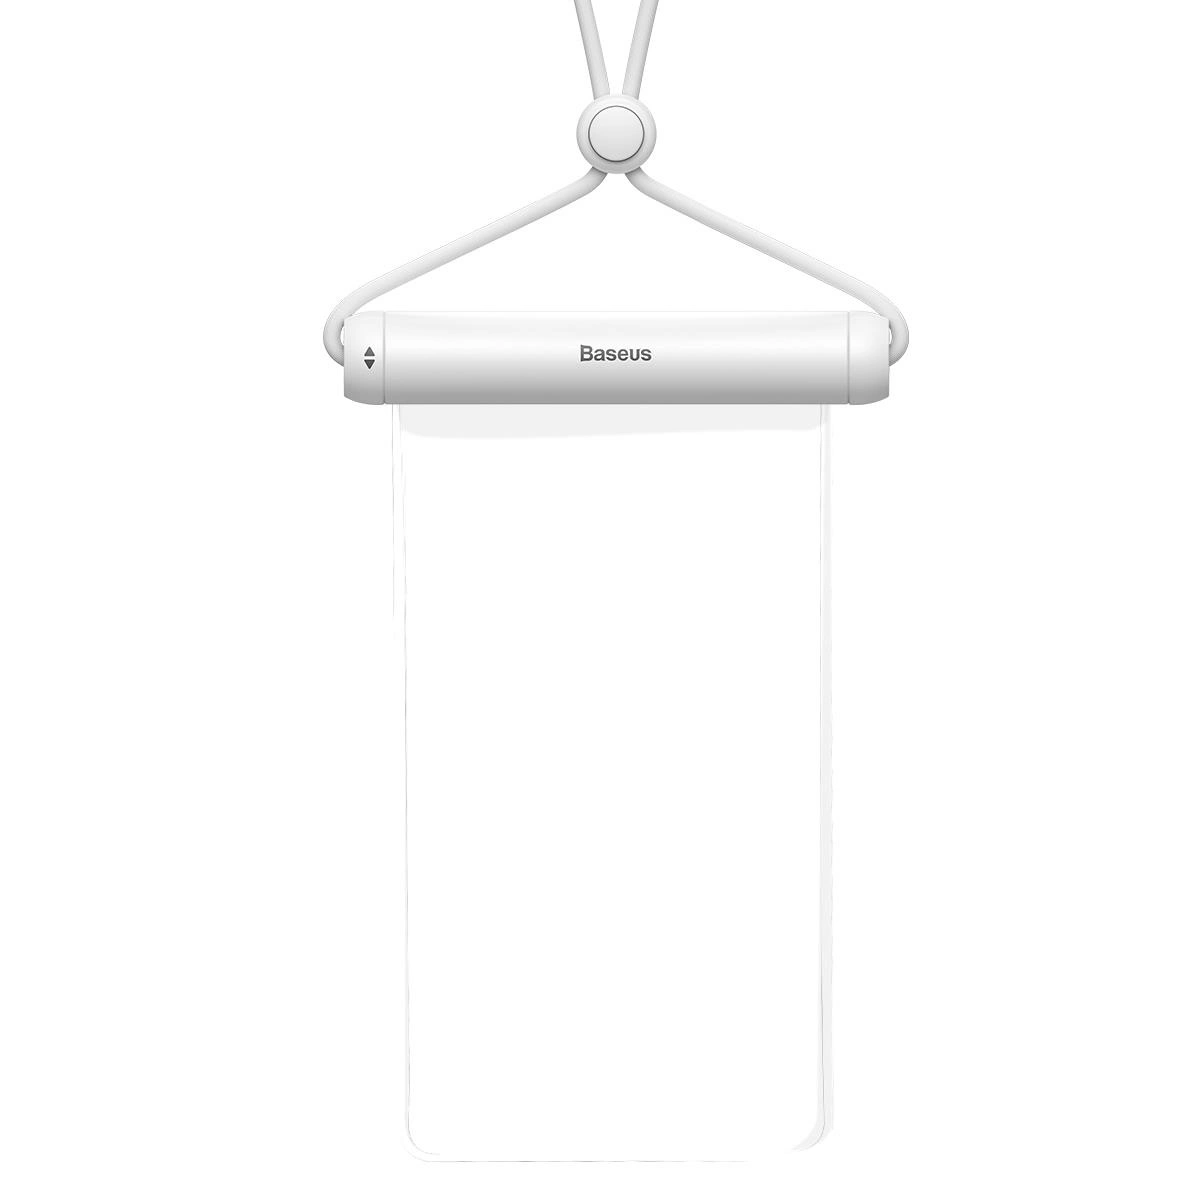 Baseus vodotěsné pouzdro na telefon Slide-cover bílé (FMYT000002)